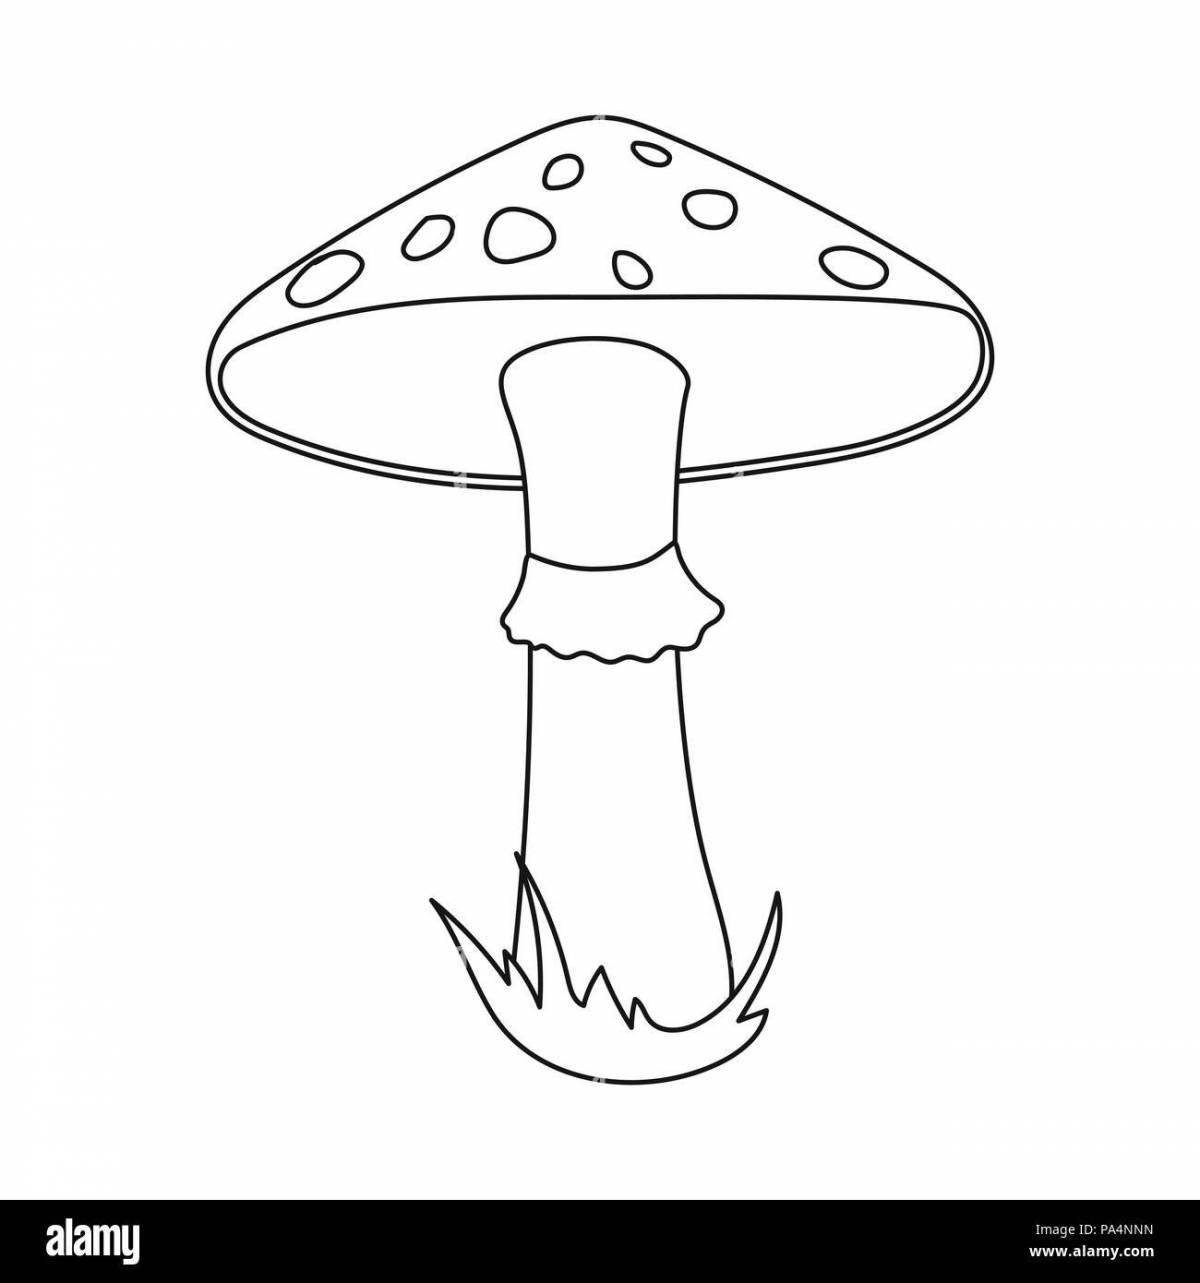 Игривый рисунок грибного мухомора